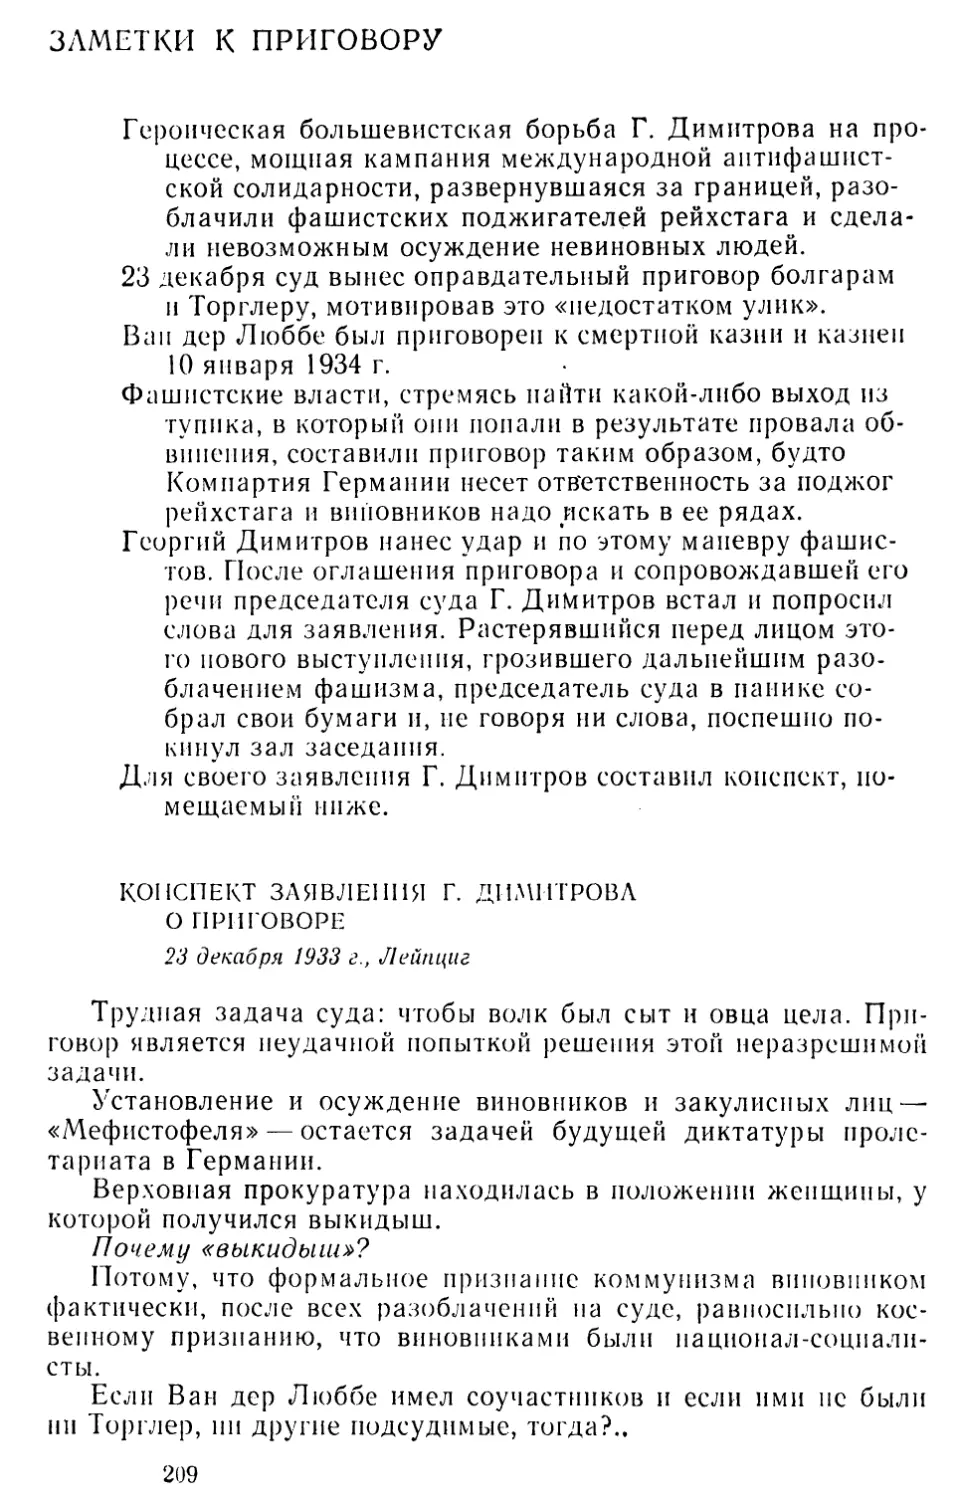 Заметки к приговору
Конспект заявления Г. Димитрова о приговоре. 23 декабря 1933 г